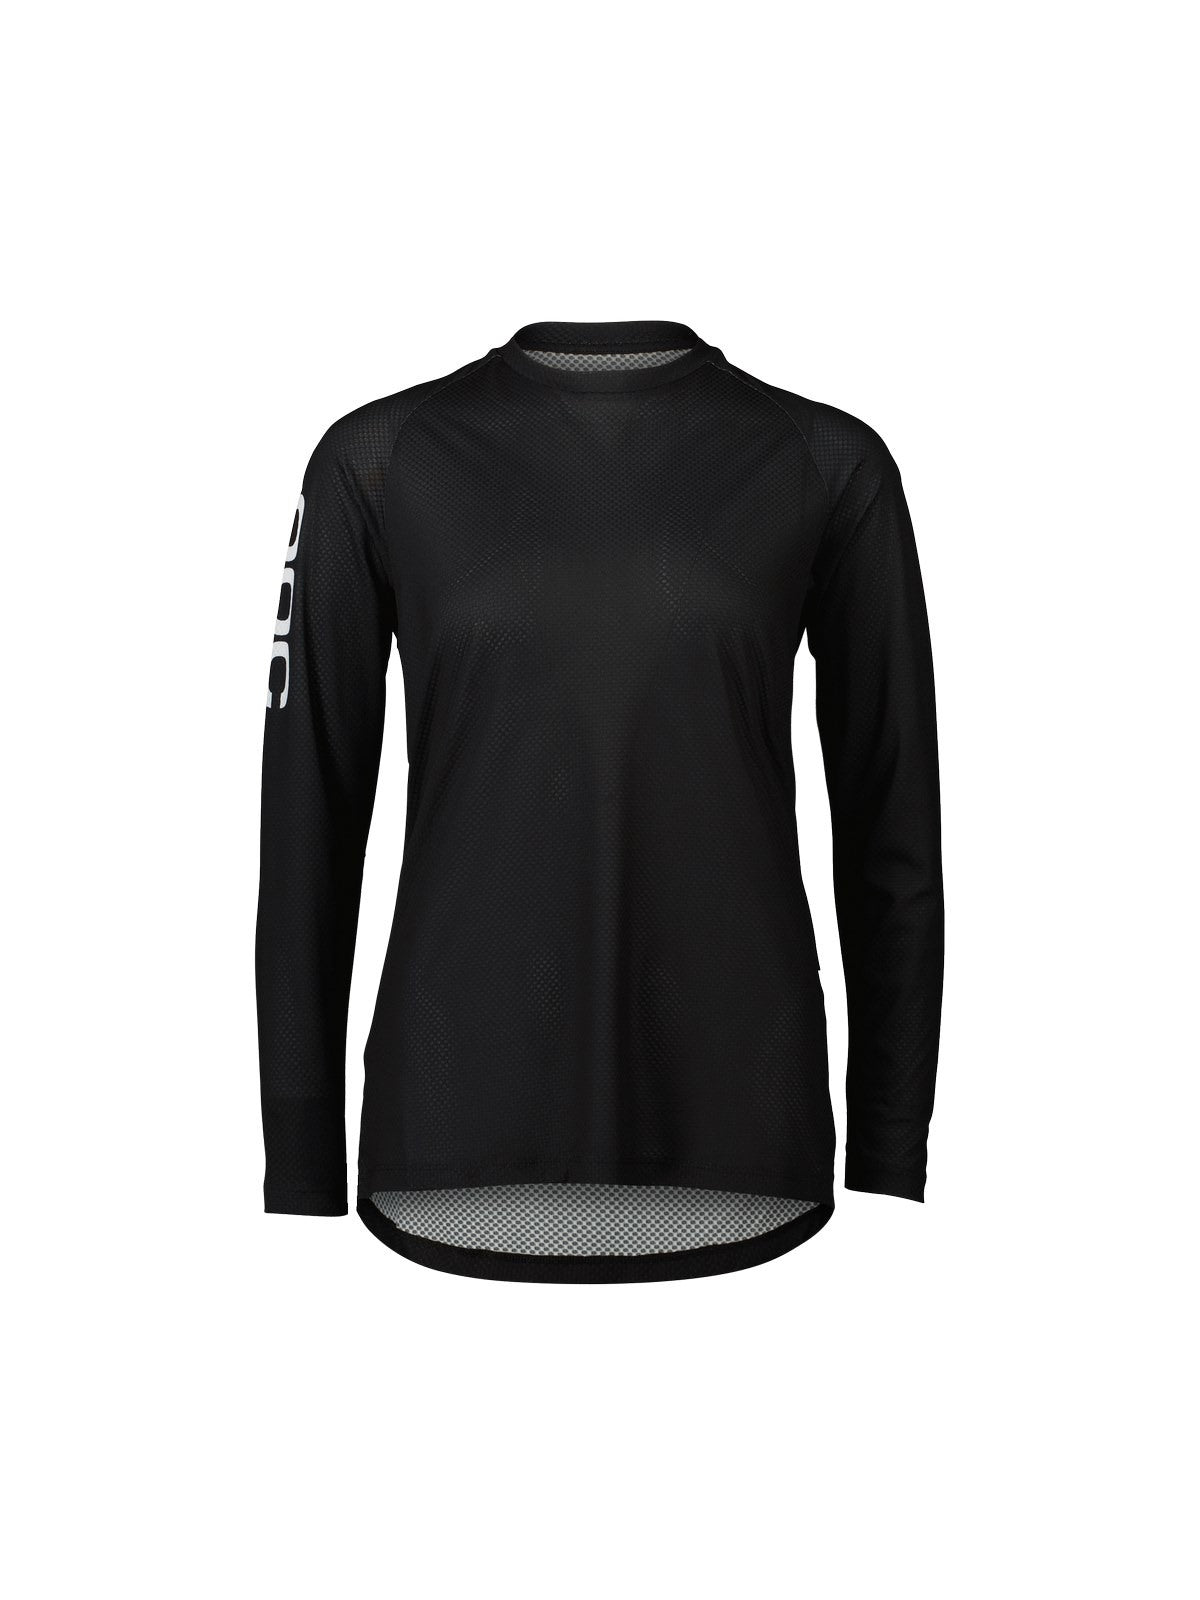 Koszulka rowerowa POC W's MTB Pure LS Jersey - Uran. Black